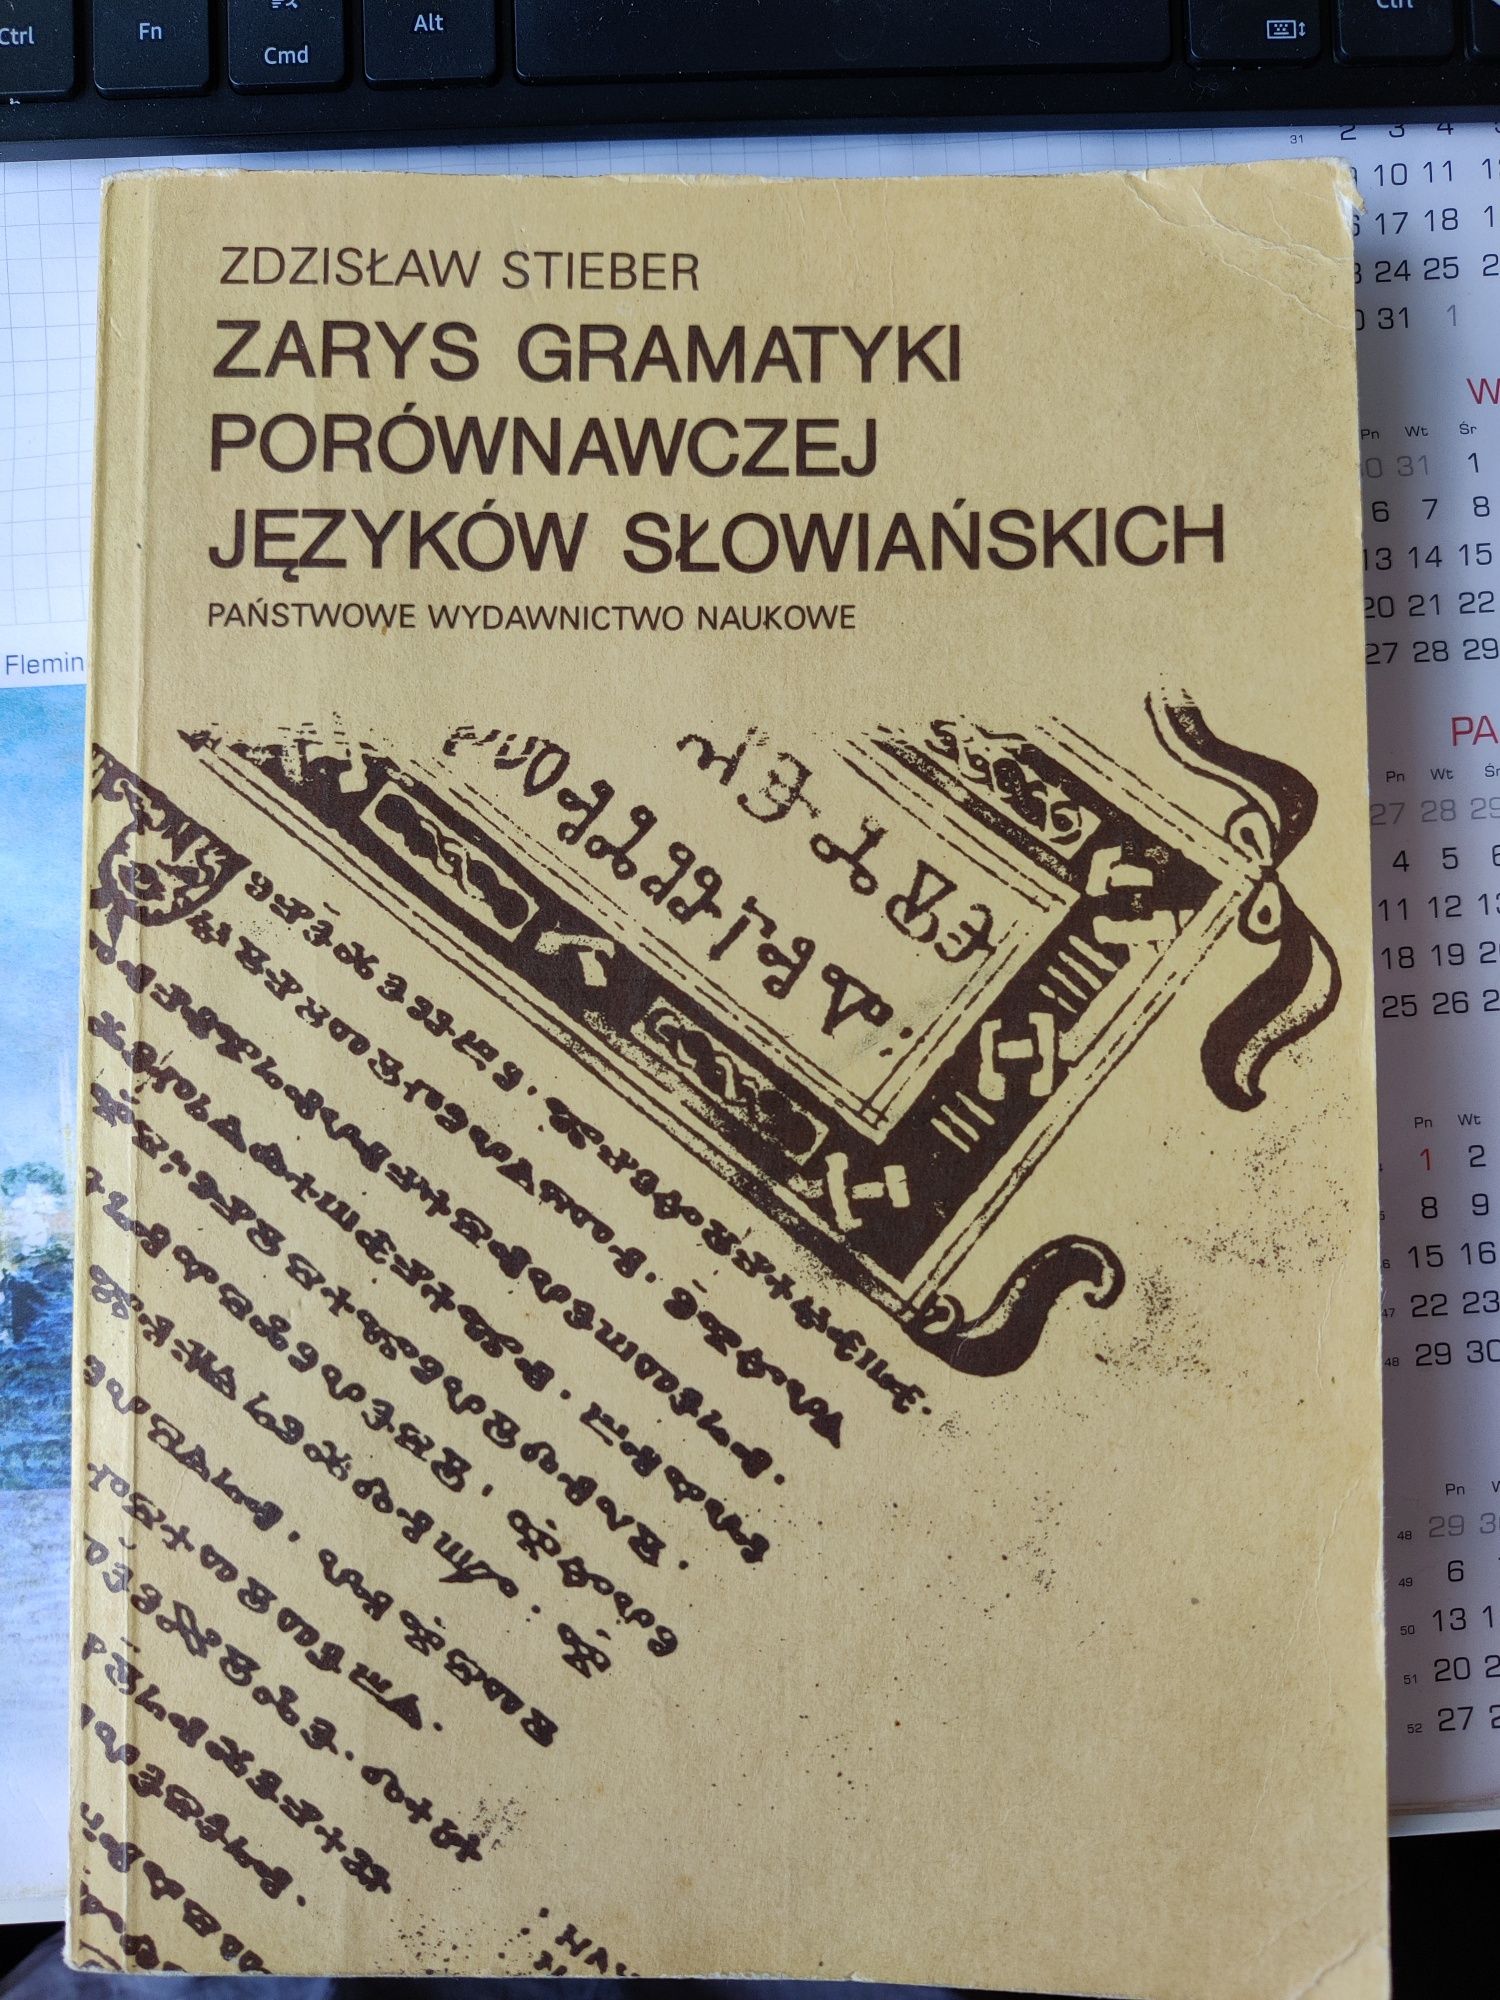 Zarys gramatyki porównawczej języków słowiańskich Zdzisław Stieber